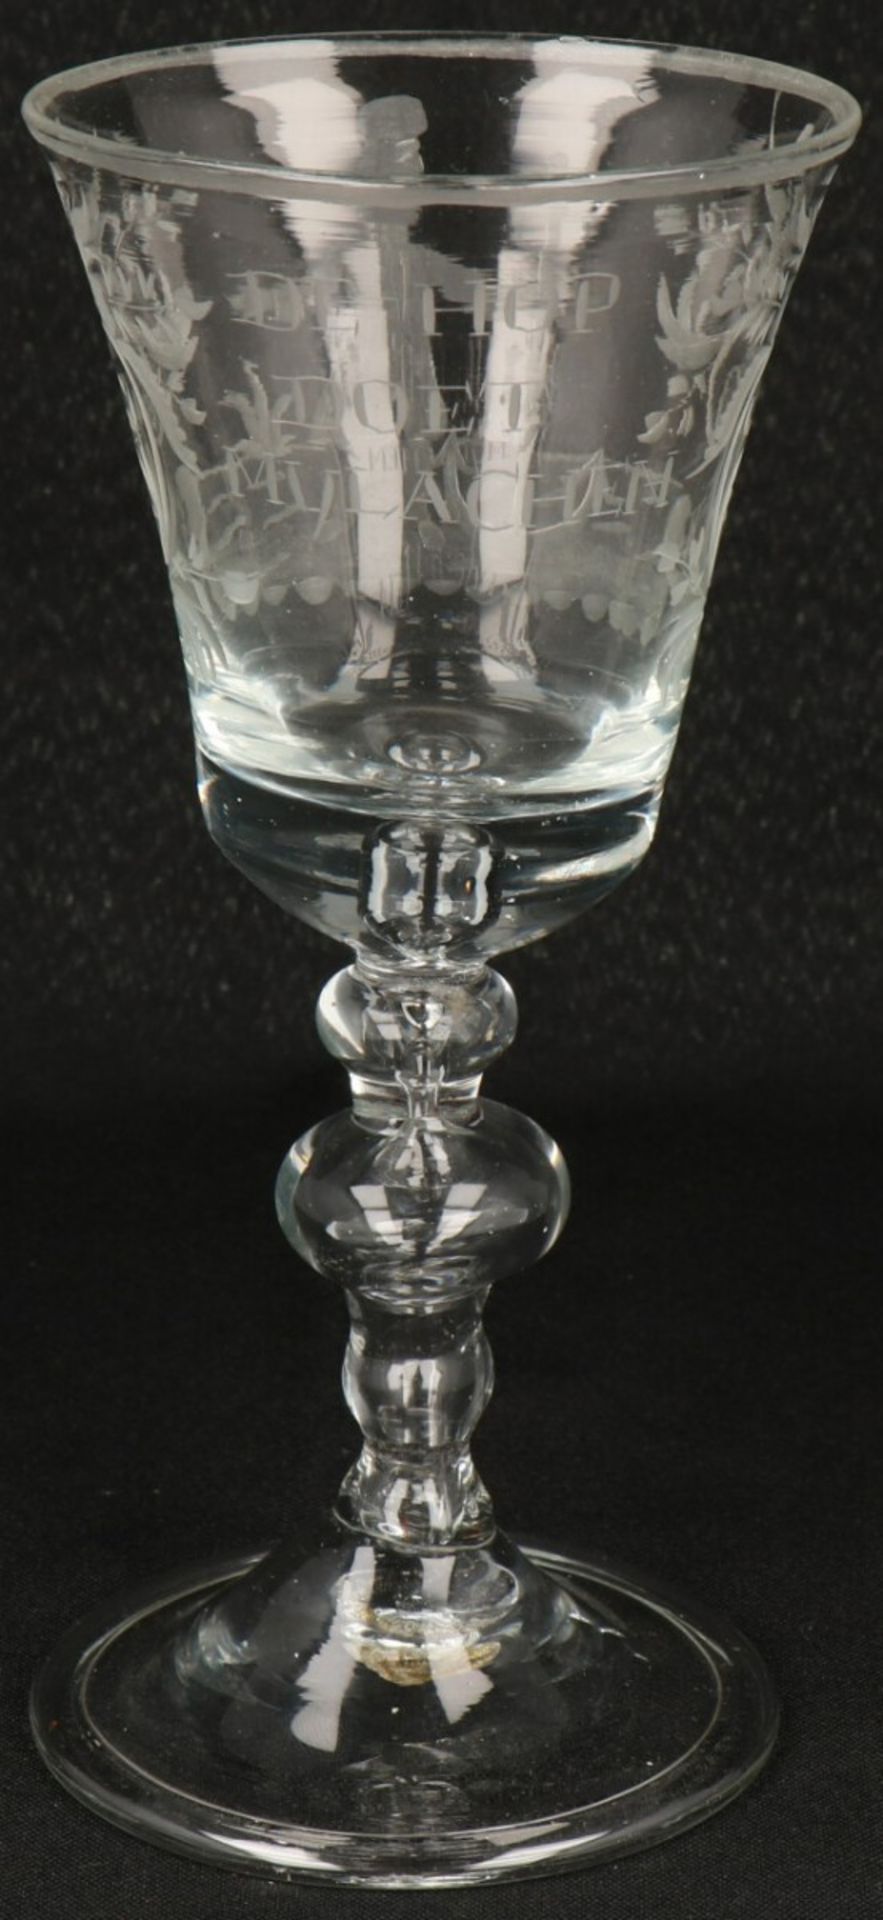 A commemorative glass 'de hop doet my lachen' 19th century.